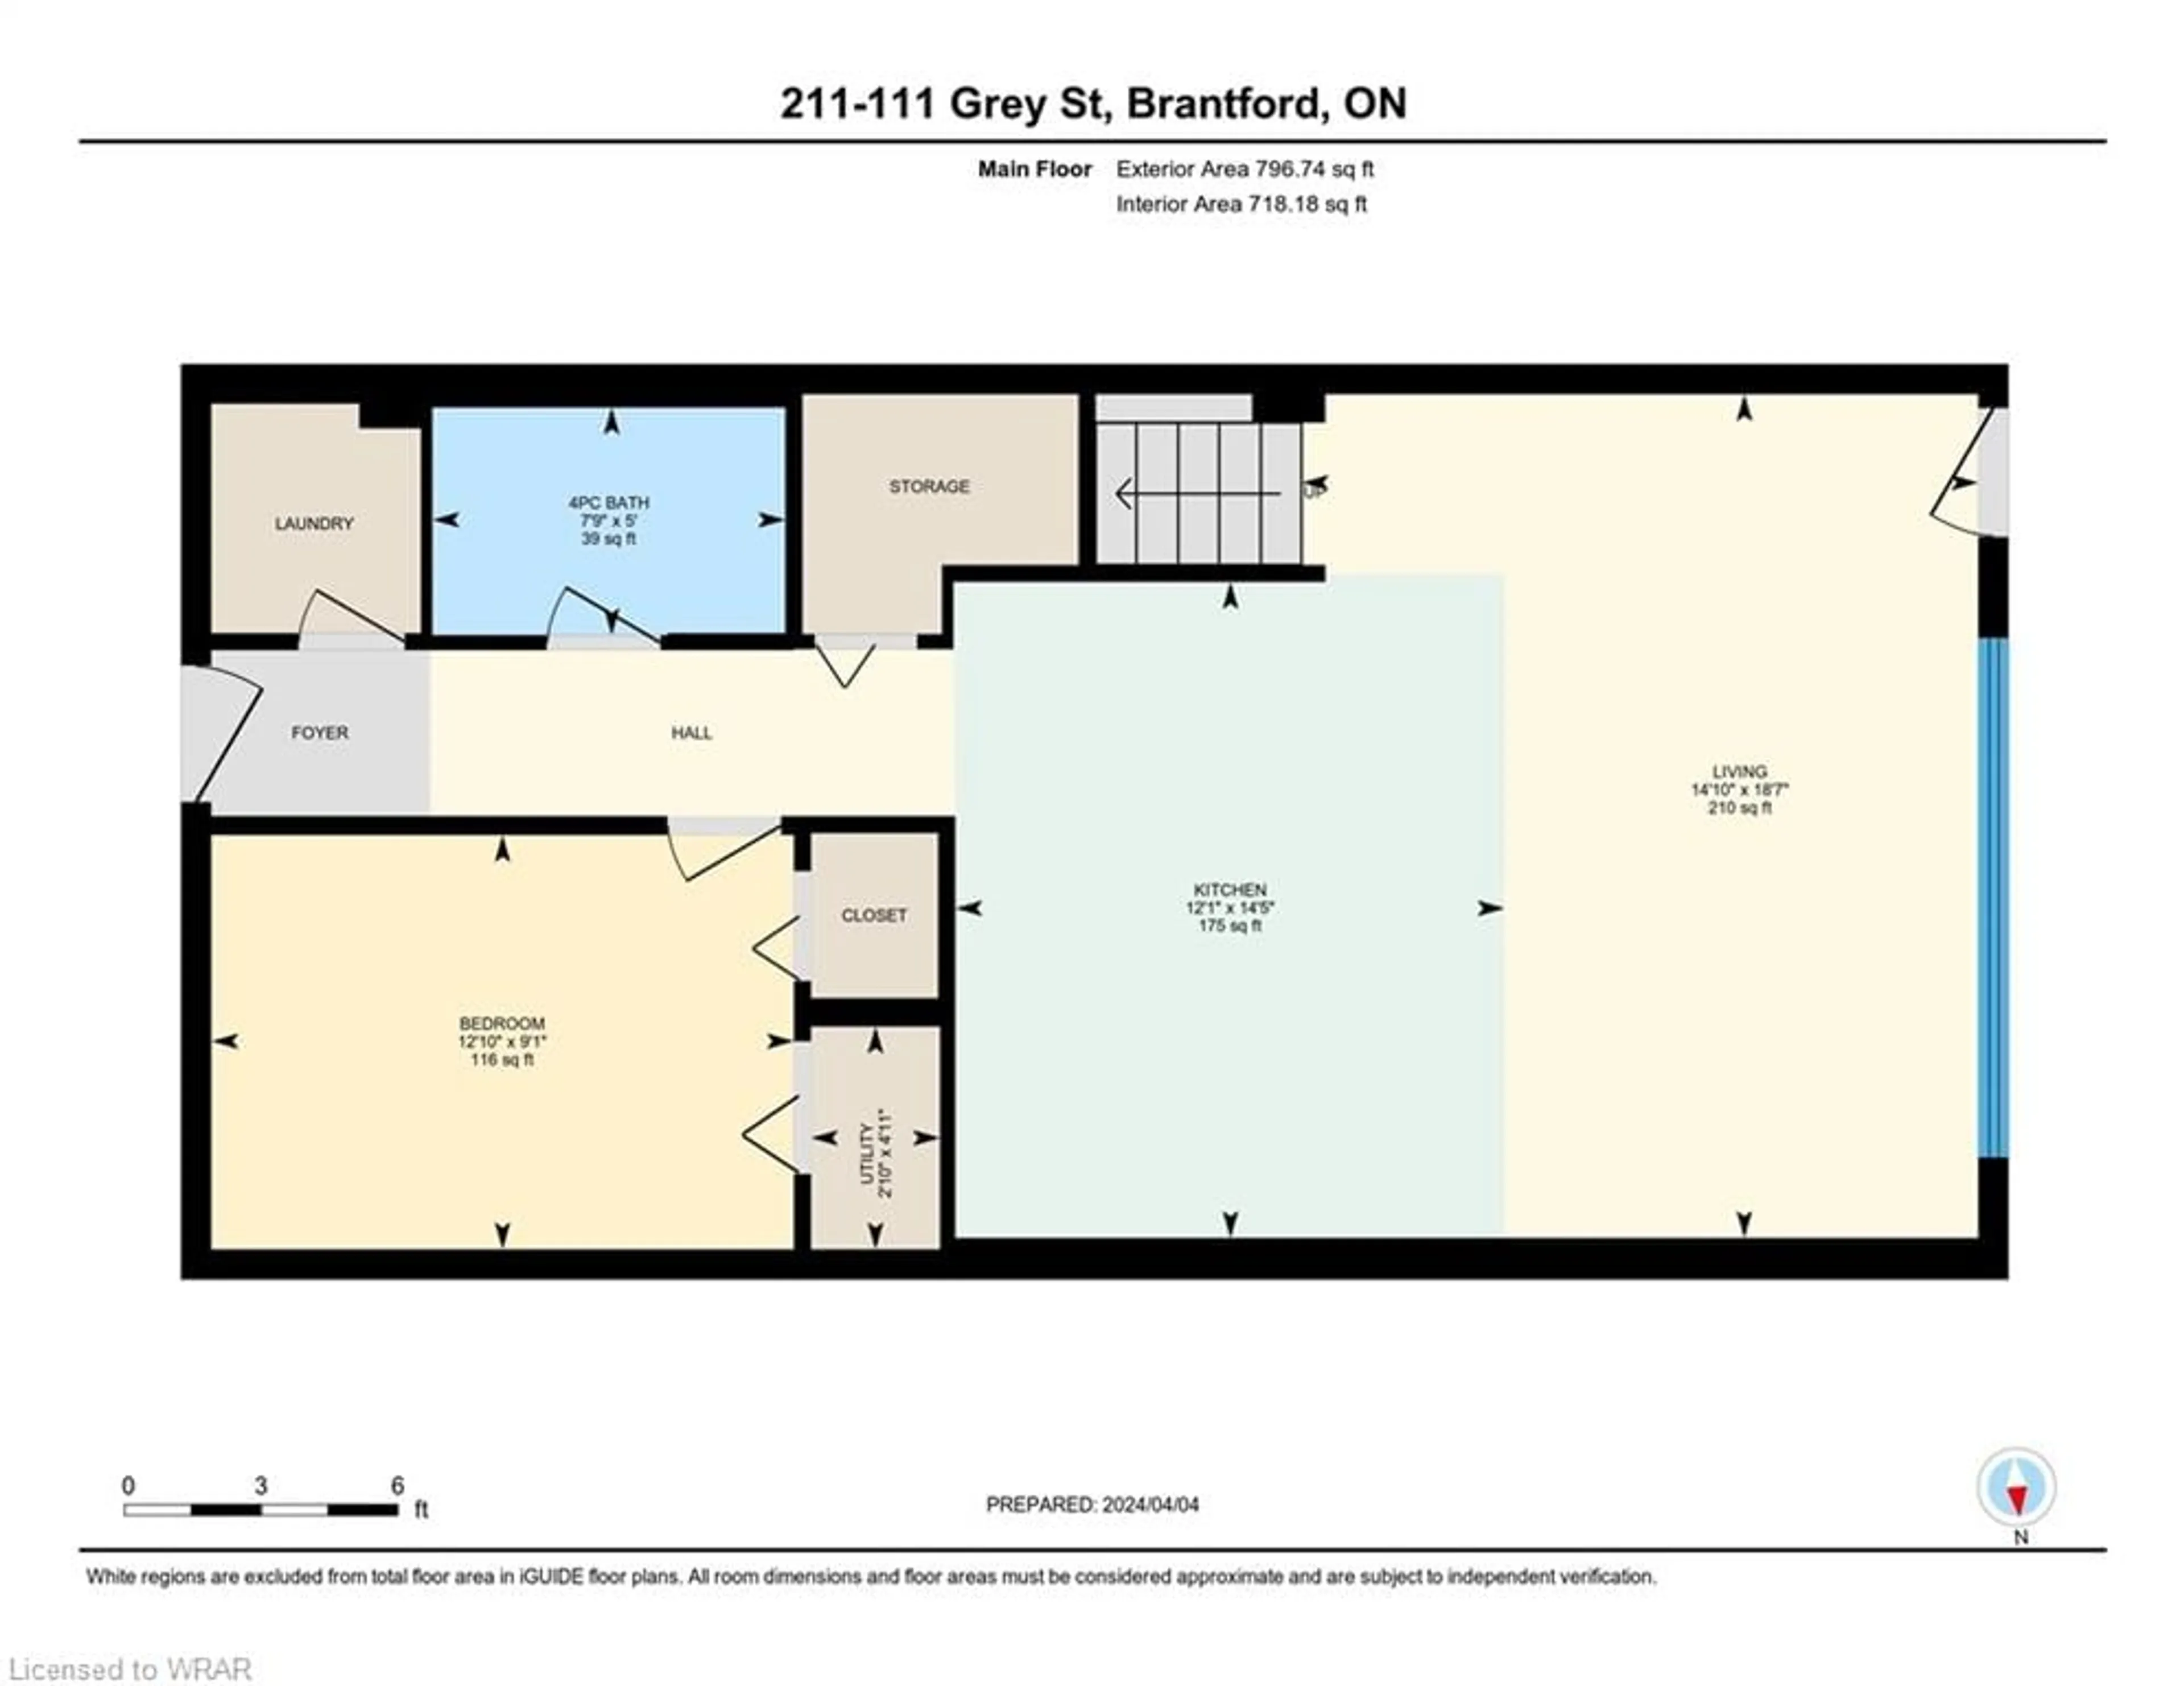 Floor plan for 111 Grey St #211, Brantford Ontario N3S 4V8